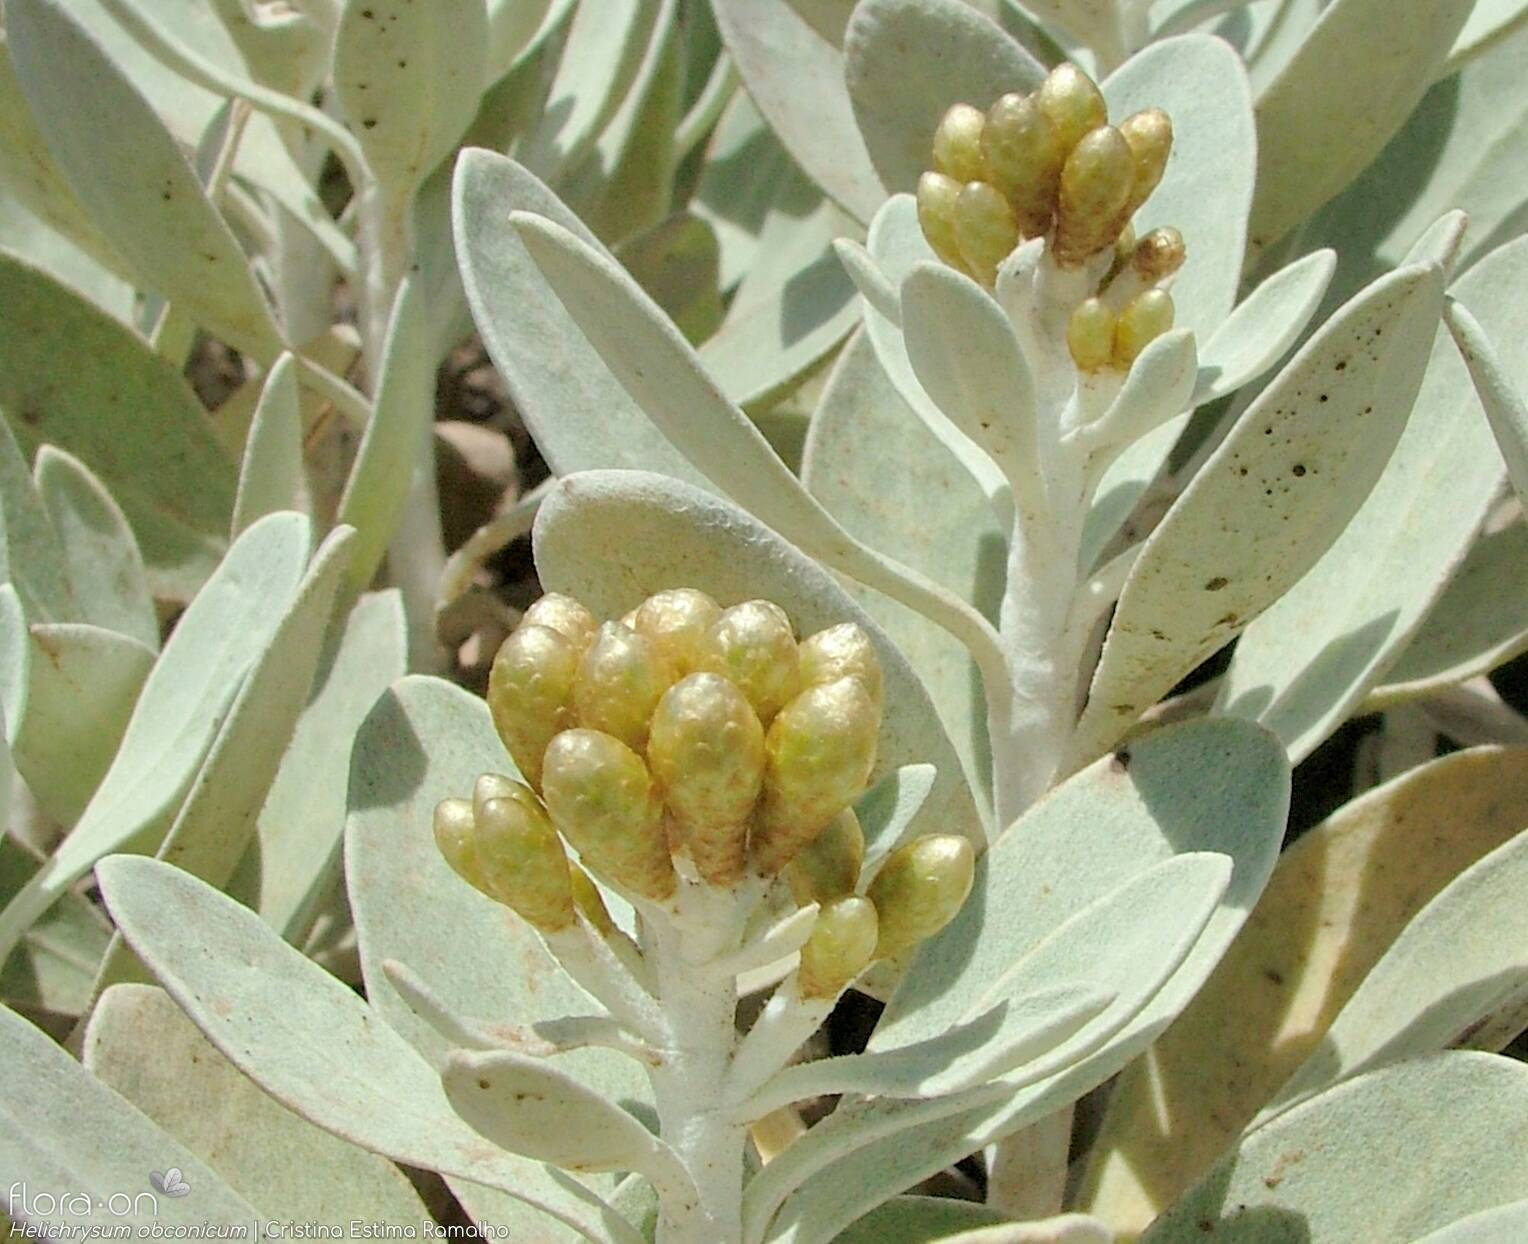 Helichrysum obconicum - Flor (geral) | Cristina Estima Ramalho; CC BY-NC 4.0